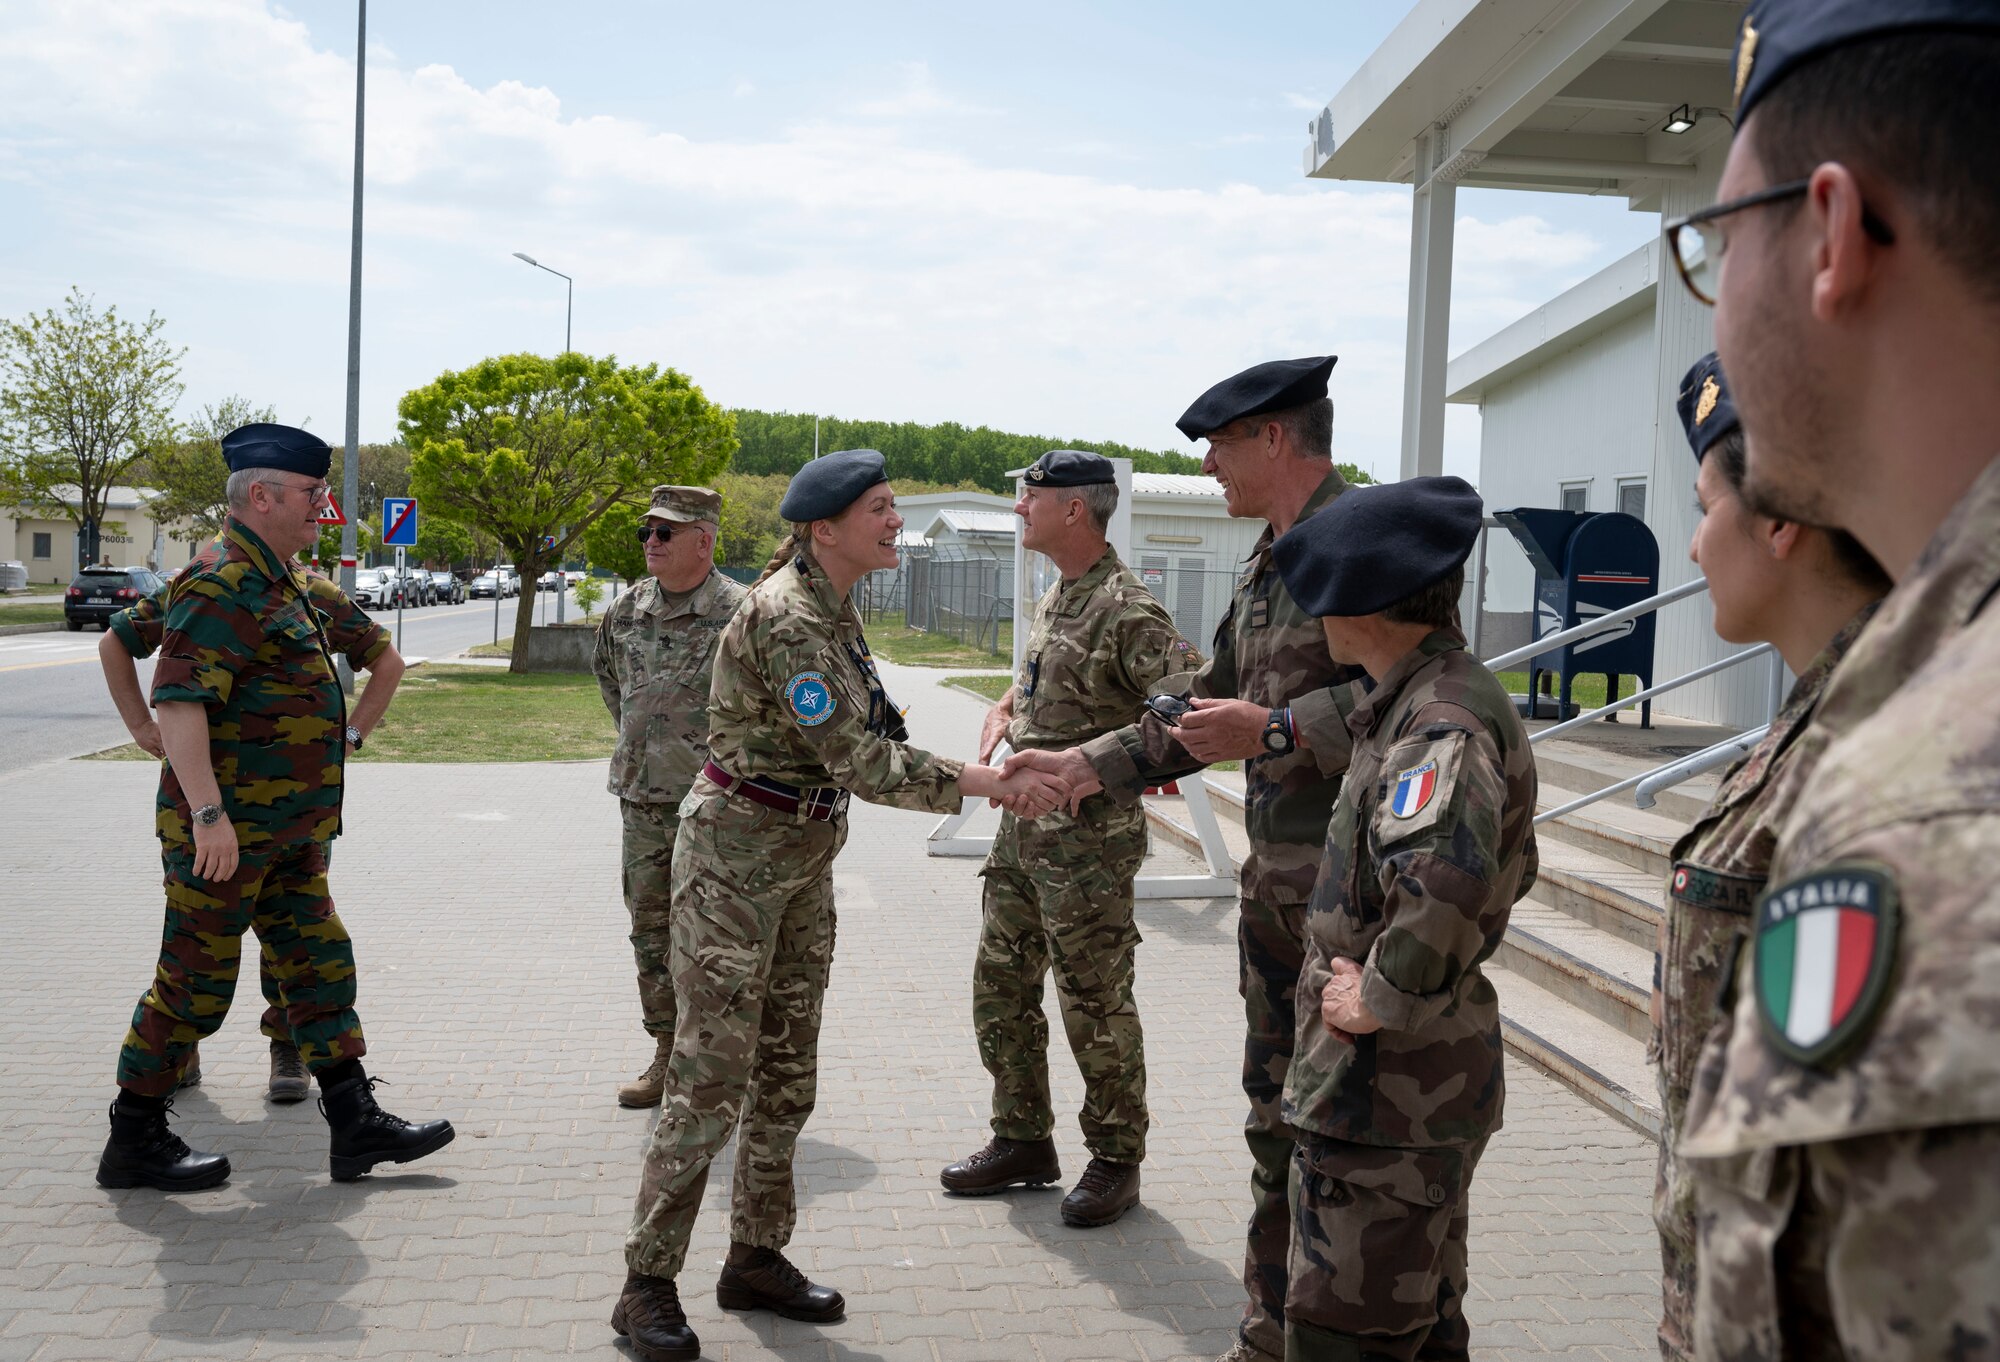 NATO, U.S. command SELs visit Romania